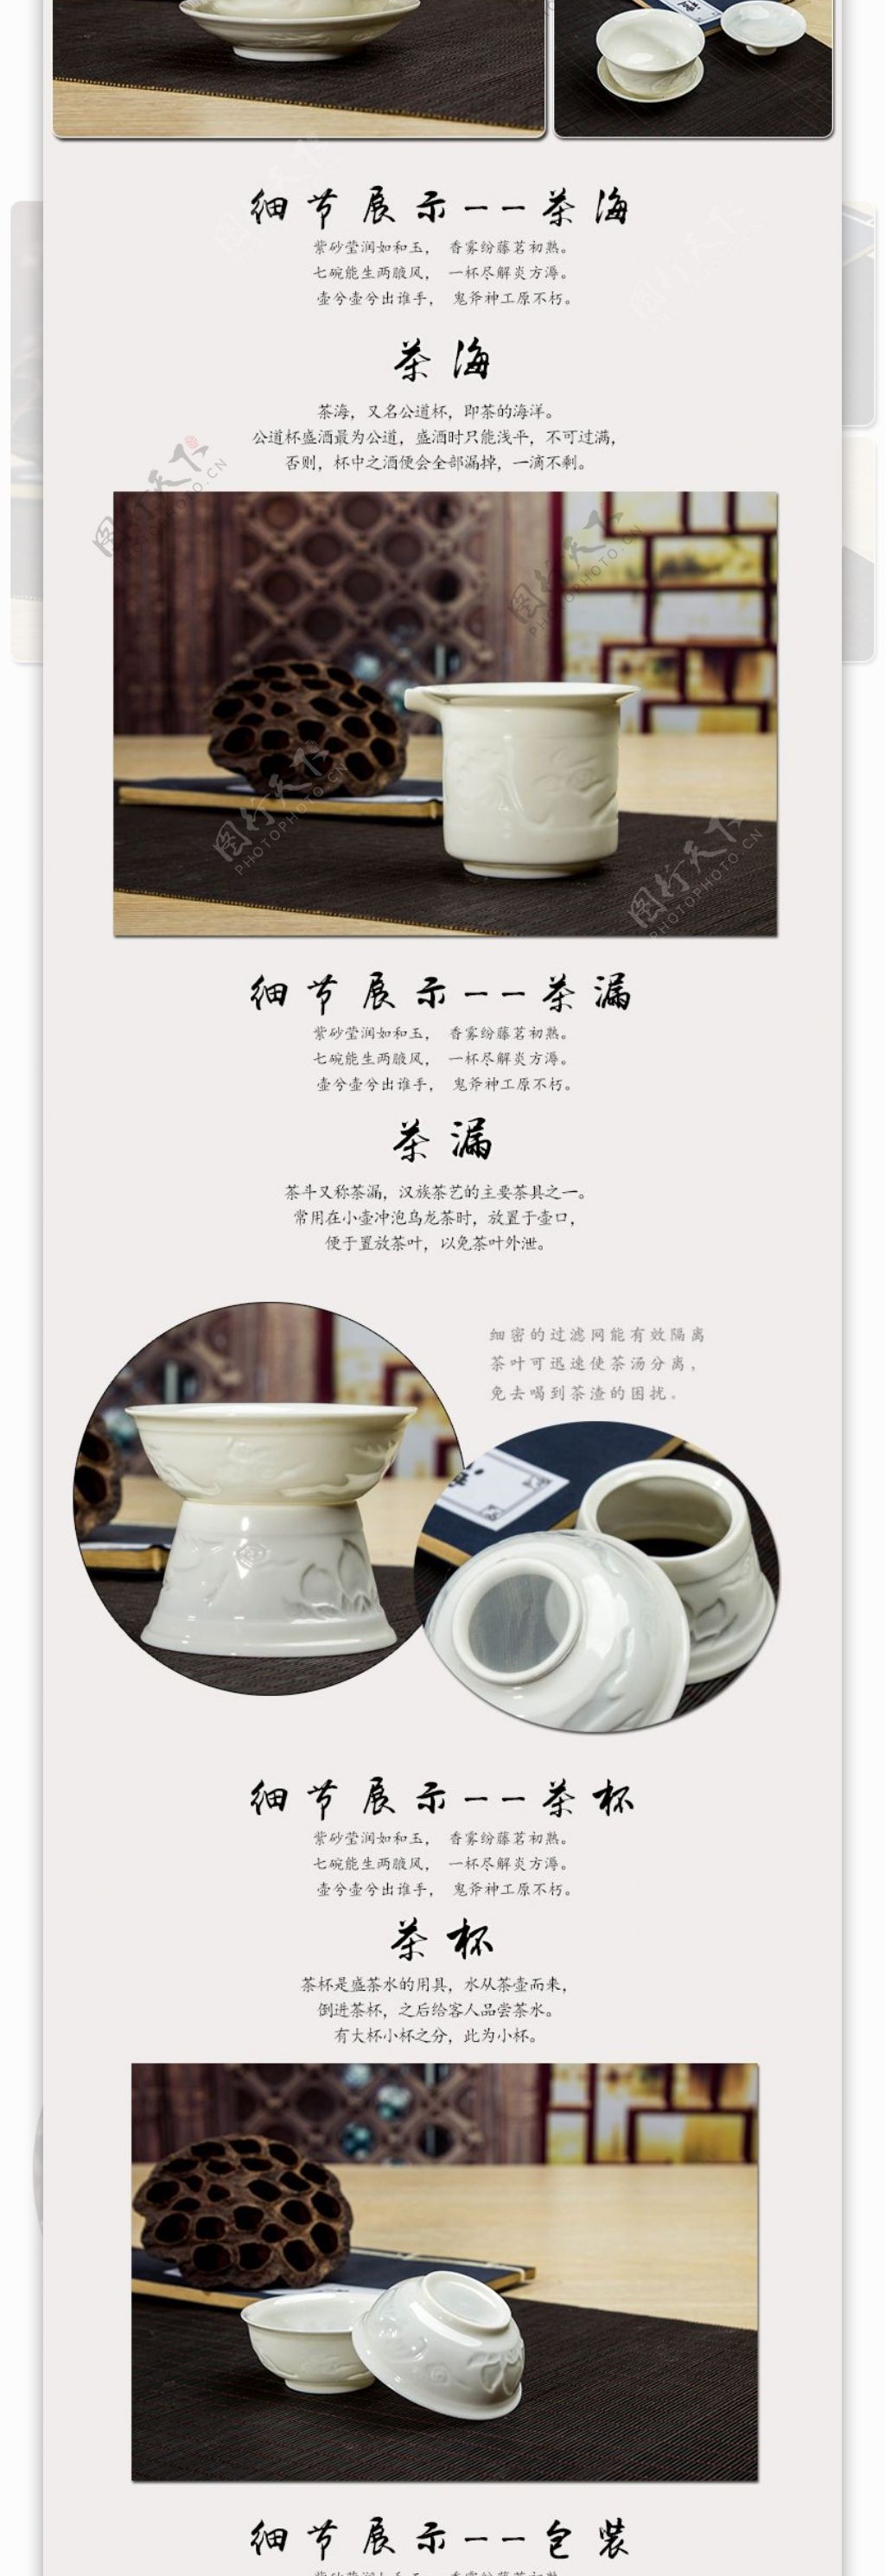 原创福建德化白瓷福系列茶具套装